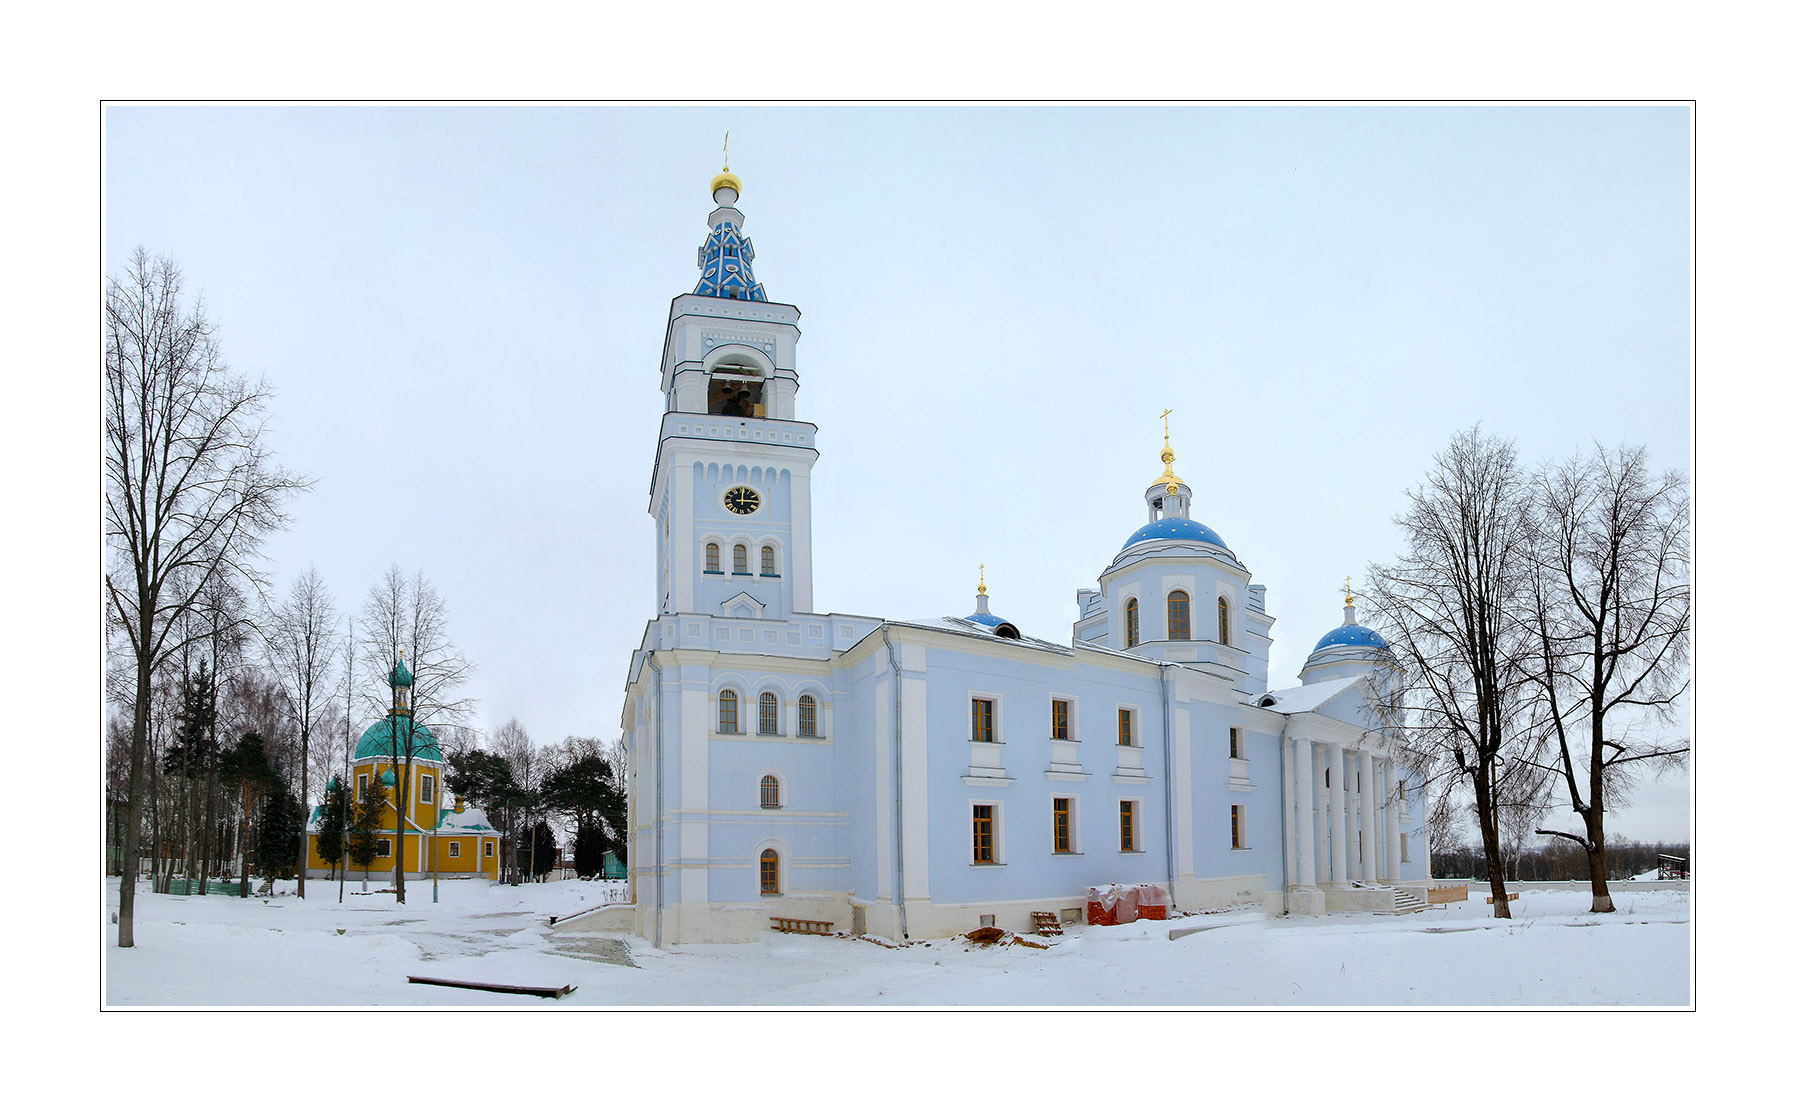 restored church (Spasskaya - the Saviour) in Dedenevo, Moscow region, 1811